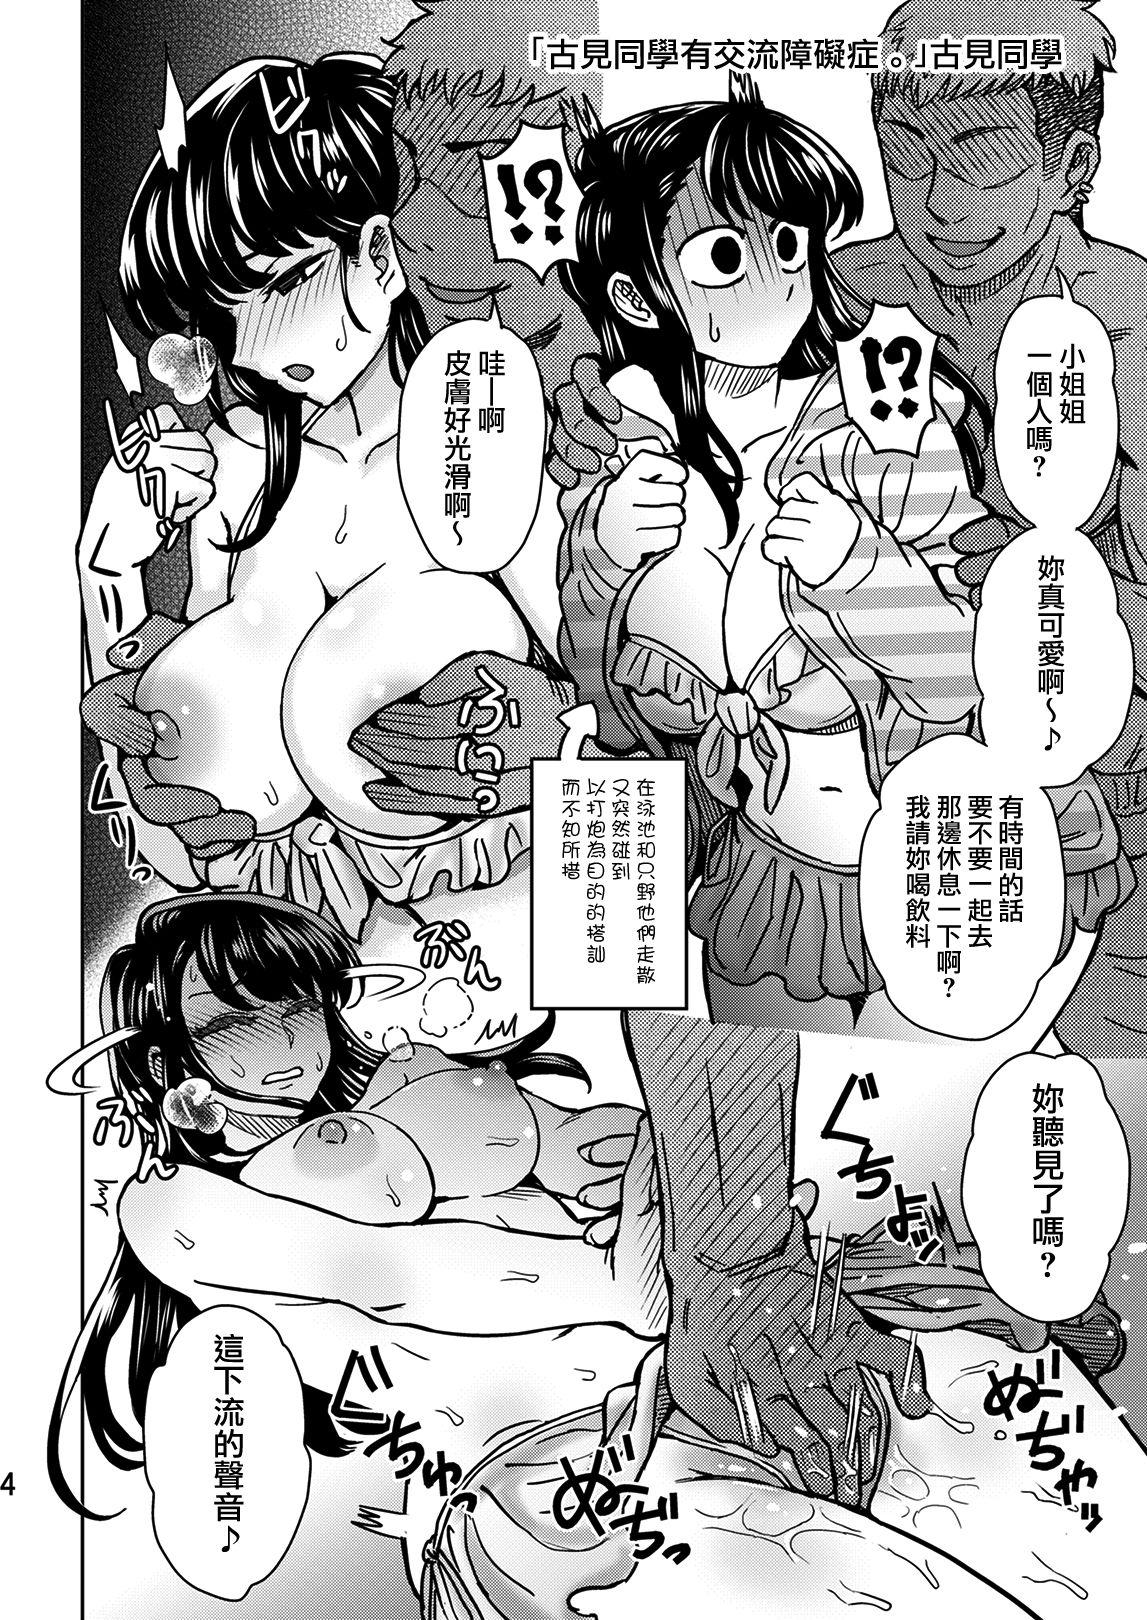 Students C95 Yorozu NTR Short Manga Shuu - Komi san wa komyushou desu. Blowjob - Page 5